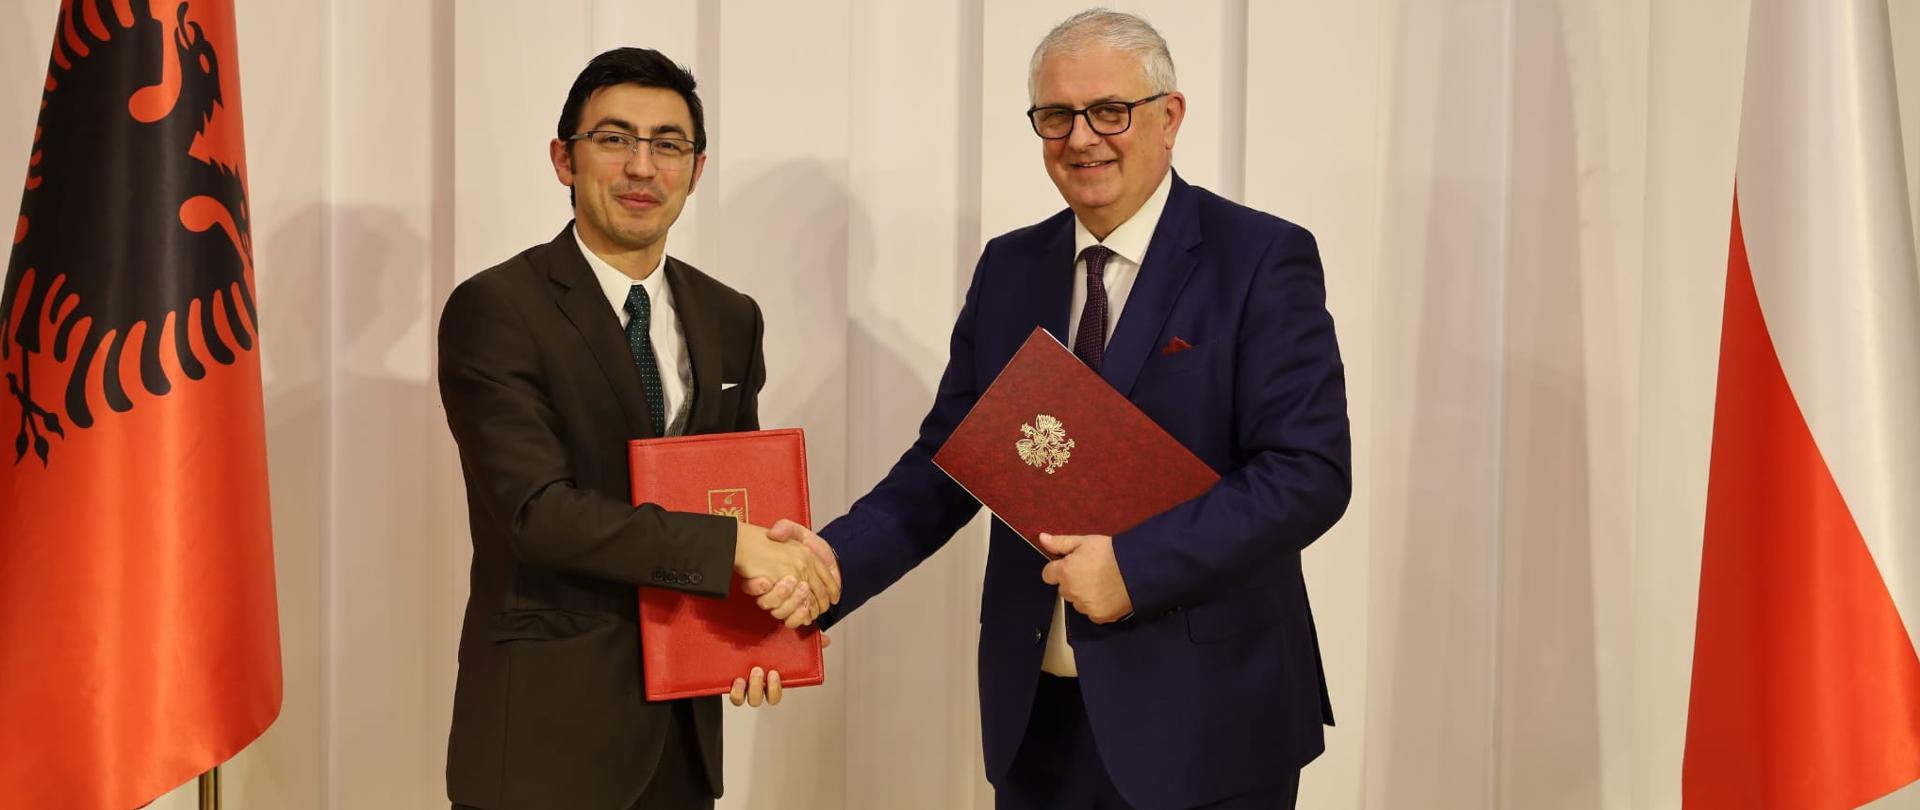 Polska rozwija współpracę gospodarczą z Albanią